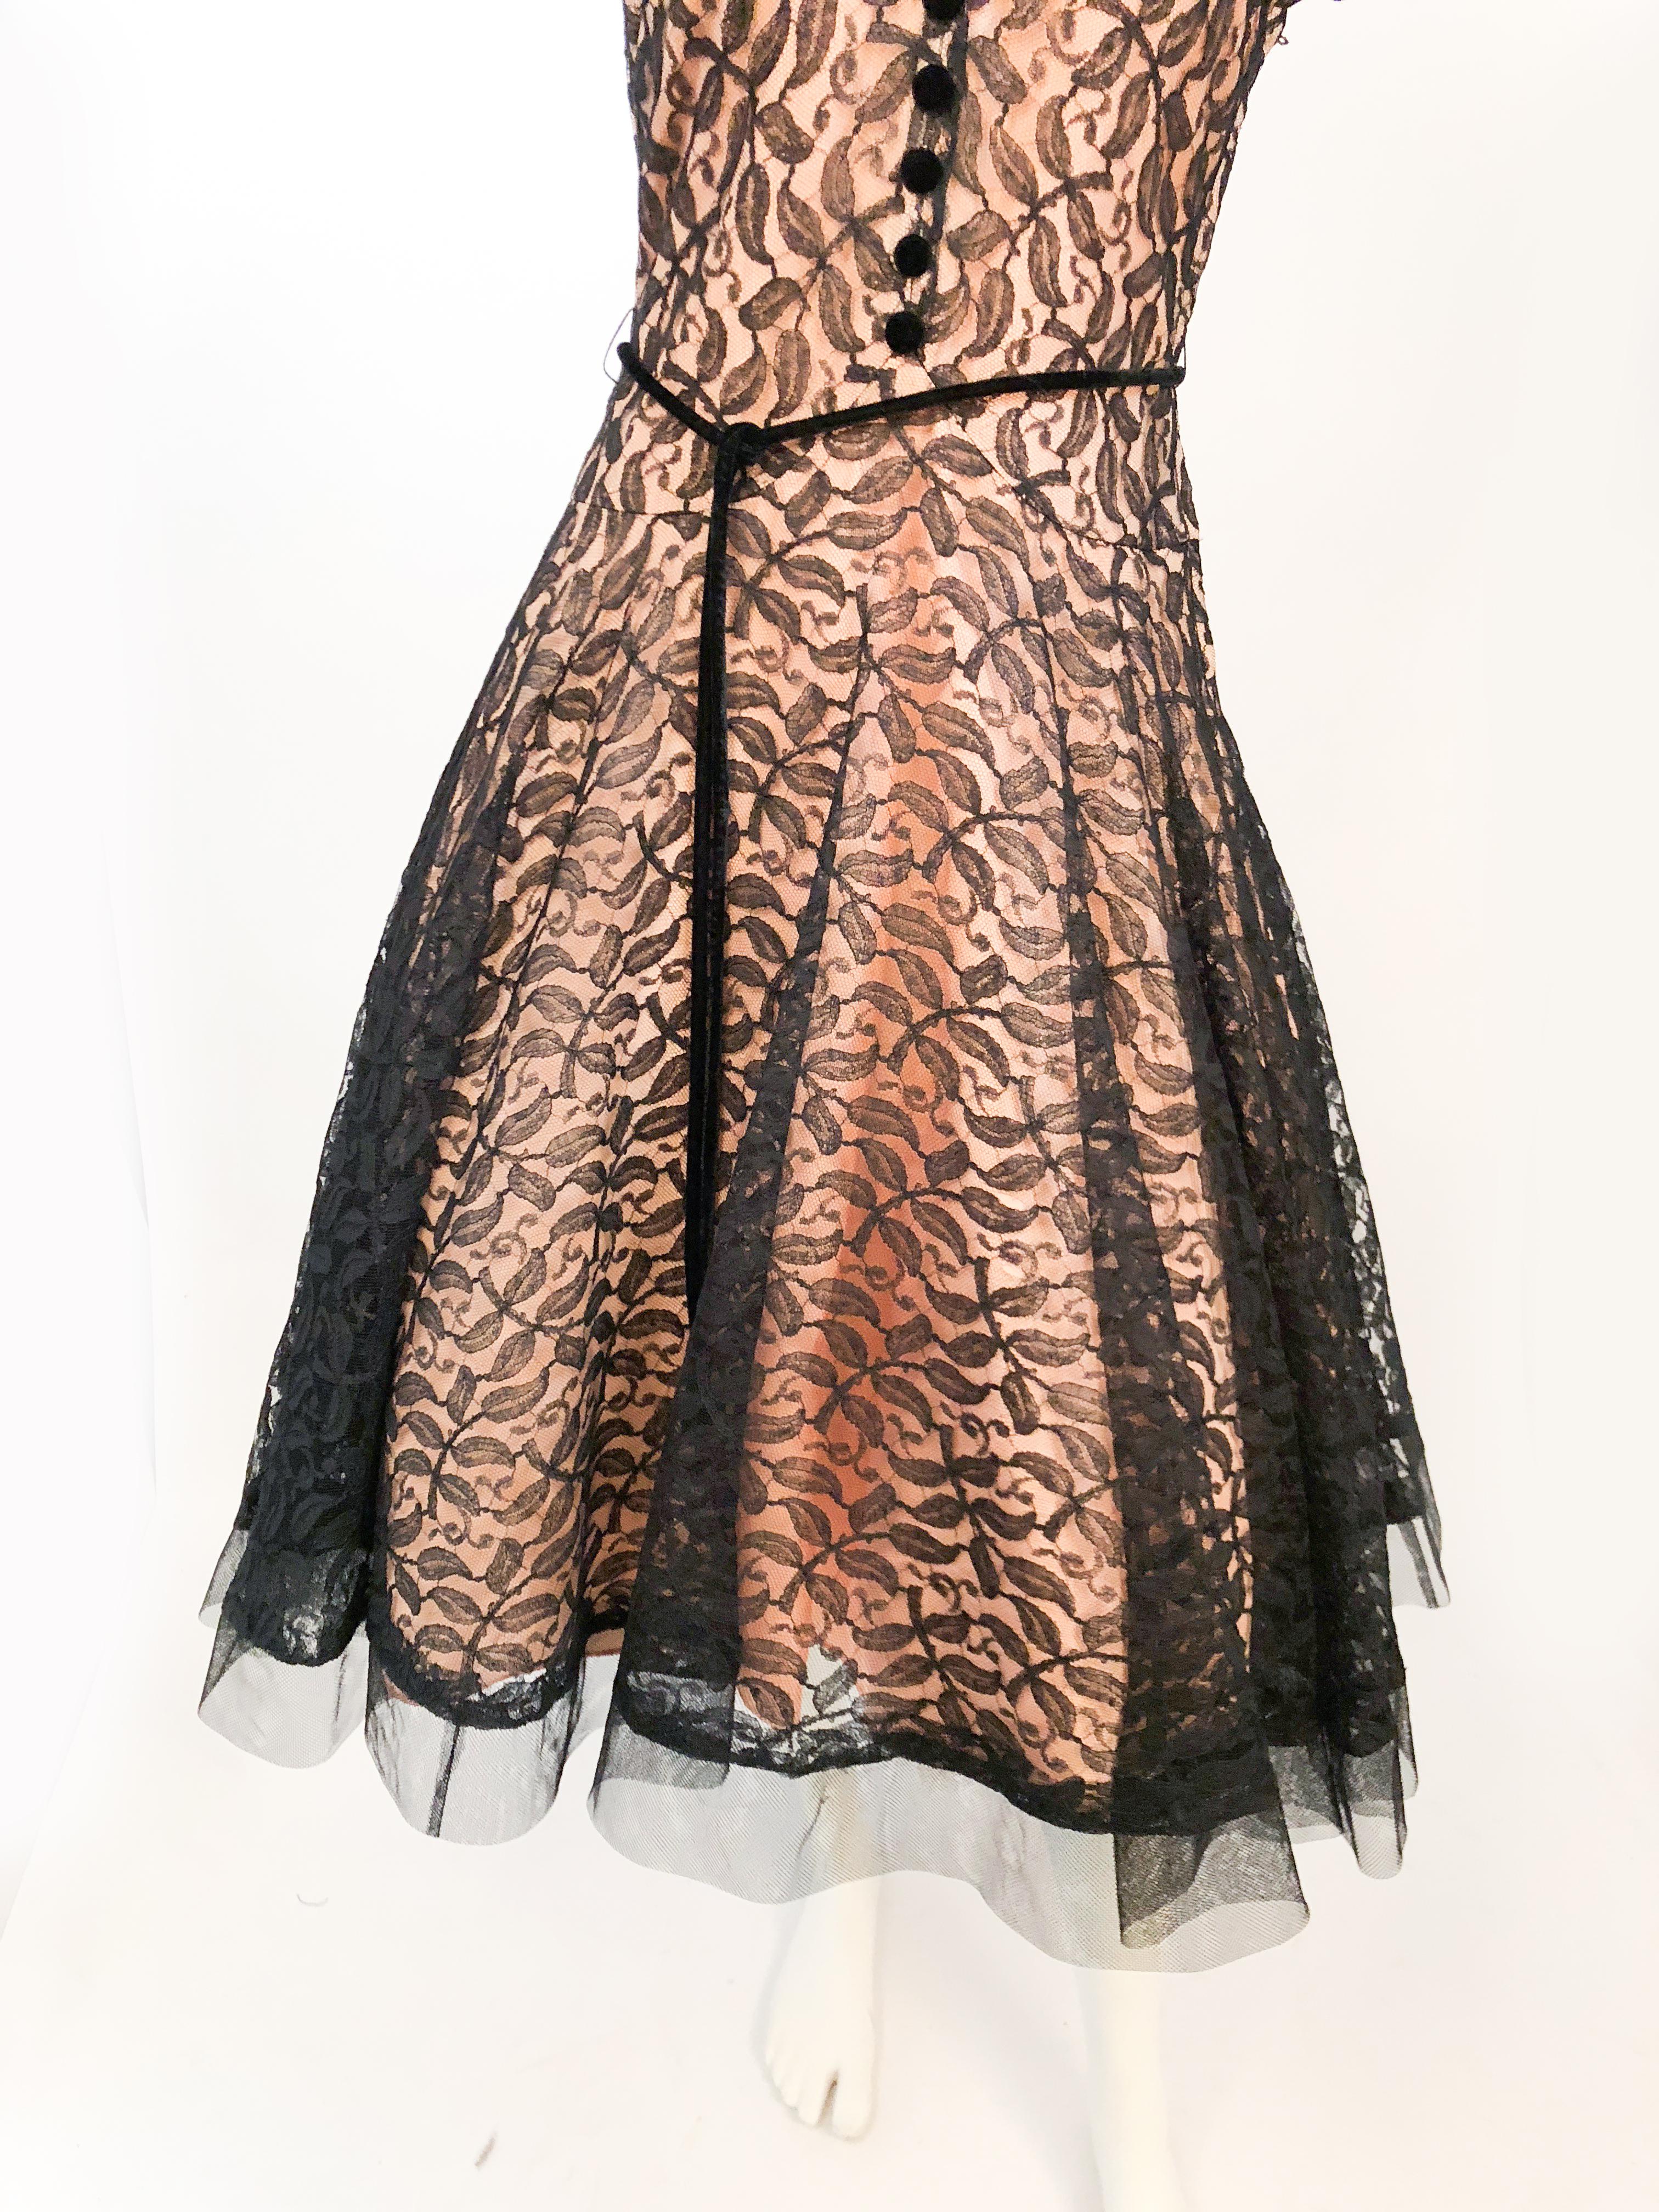 1950s lace dress